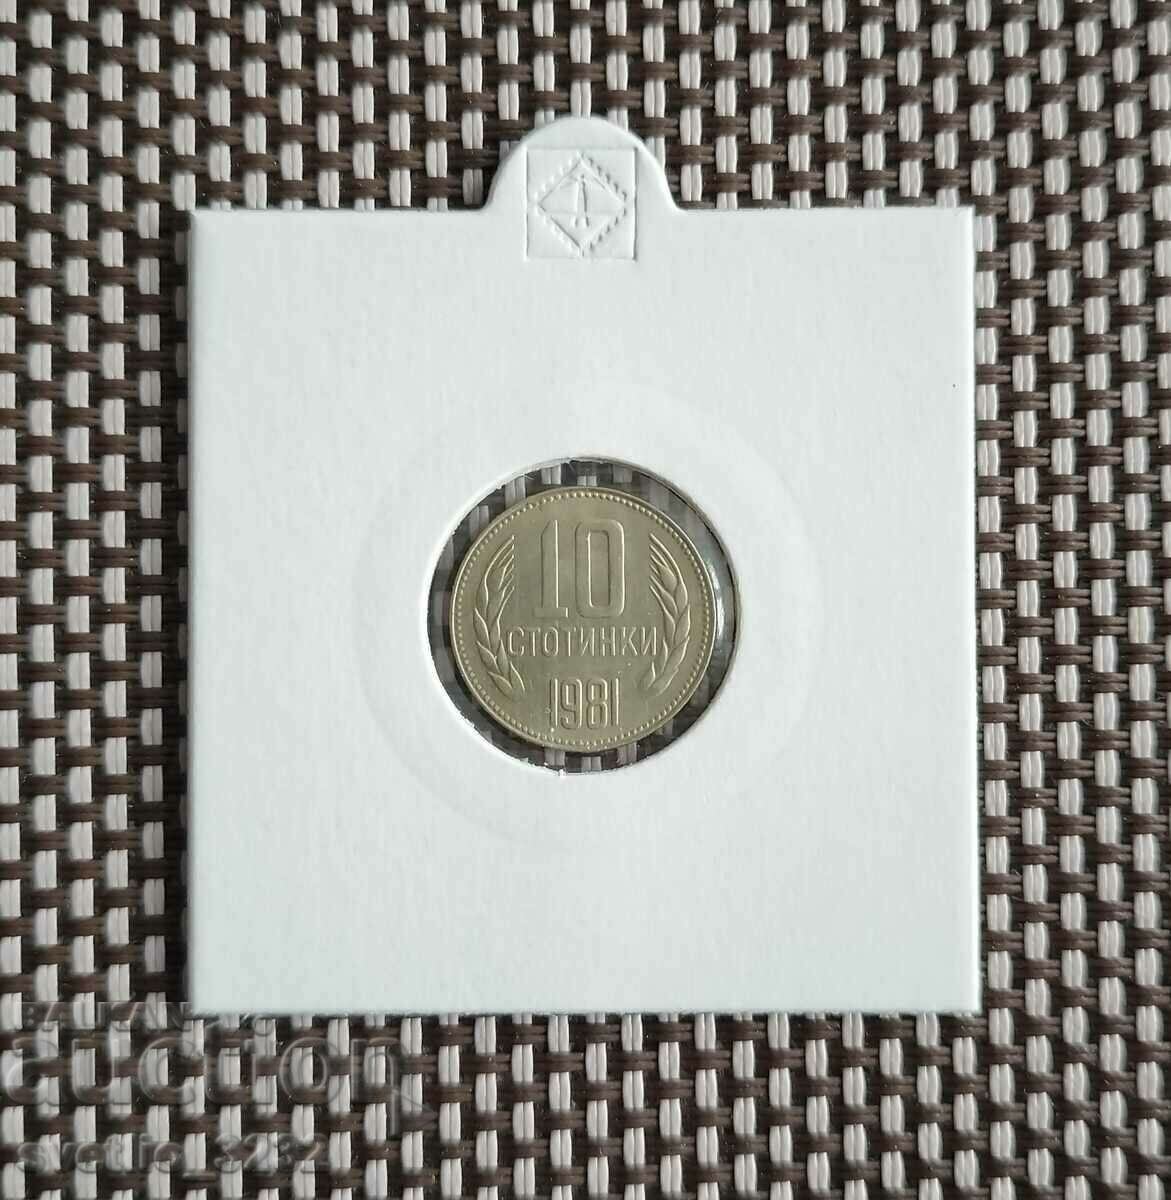 10 σεντς 1981